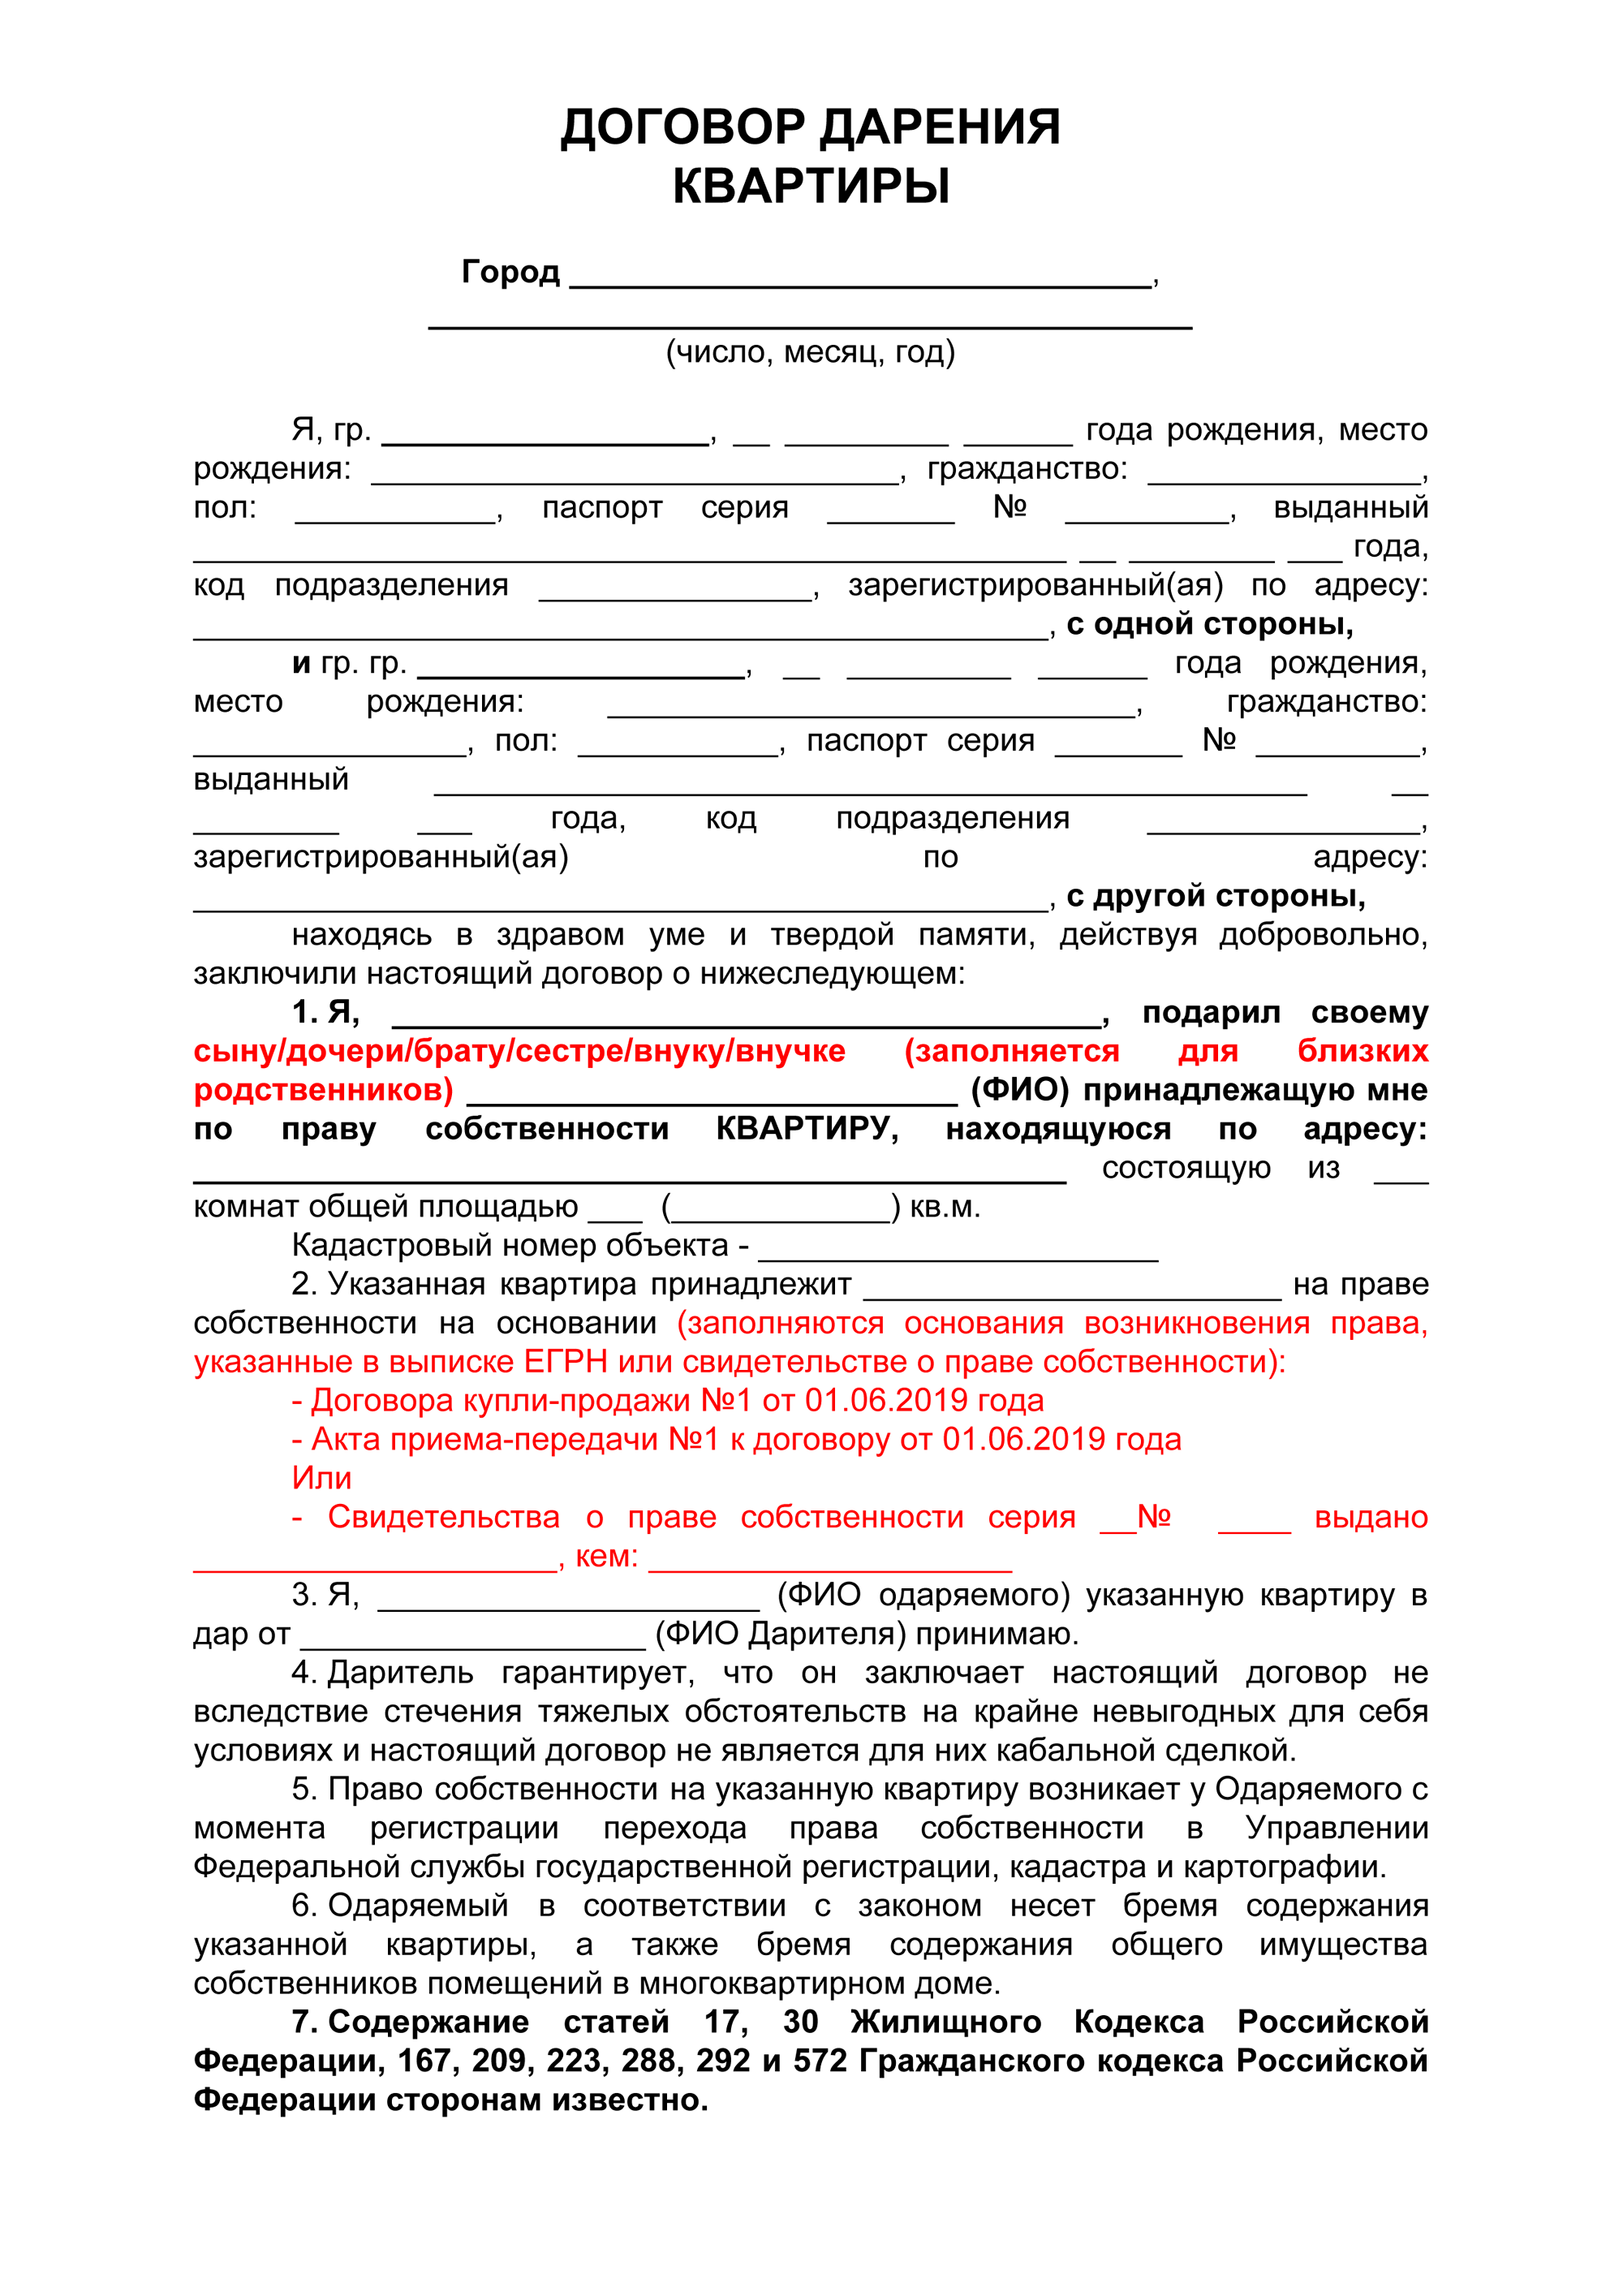 Документы для участия в программе переселения соотечественников 2020 украинцев